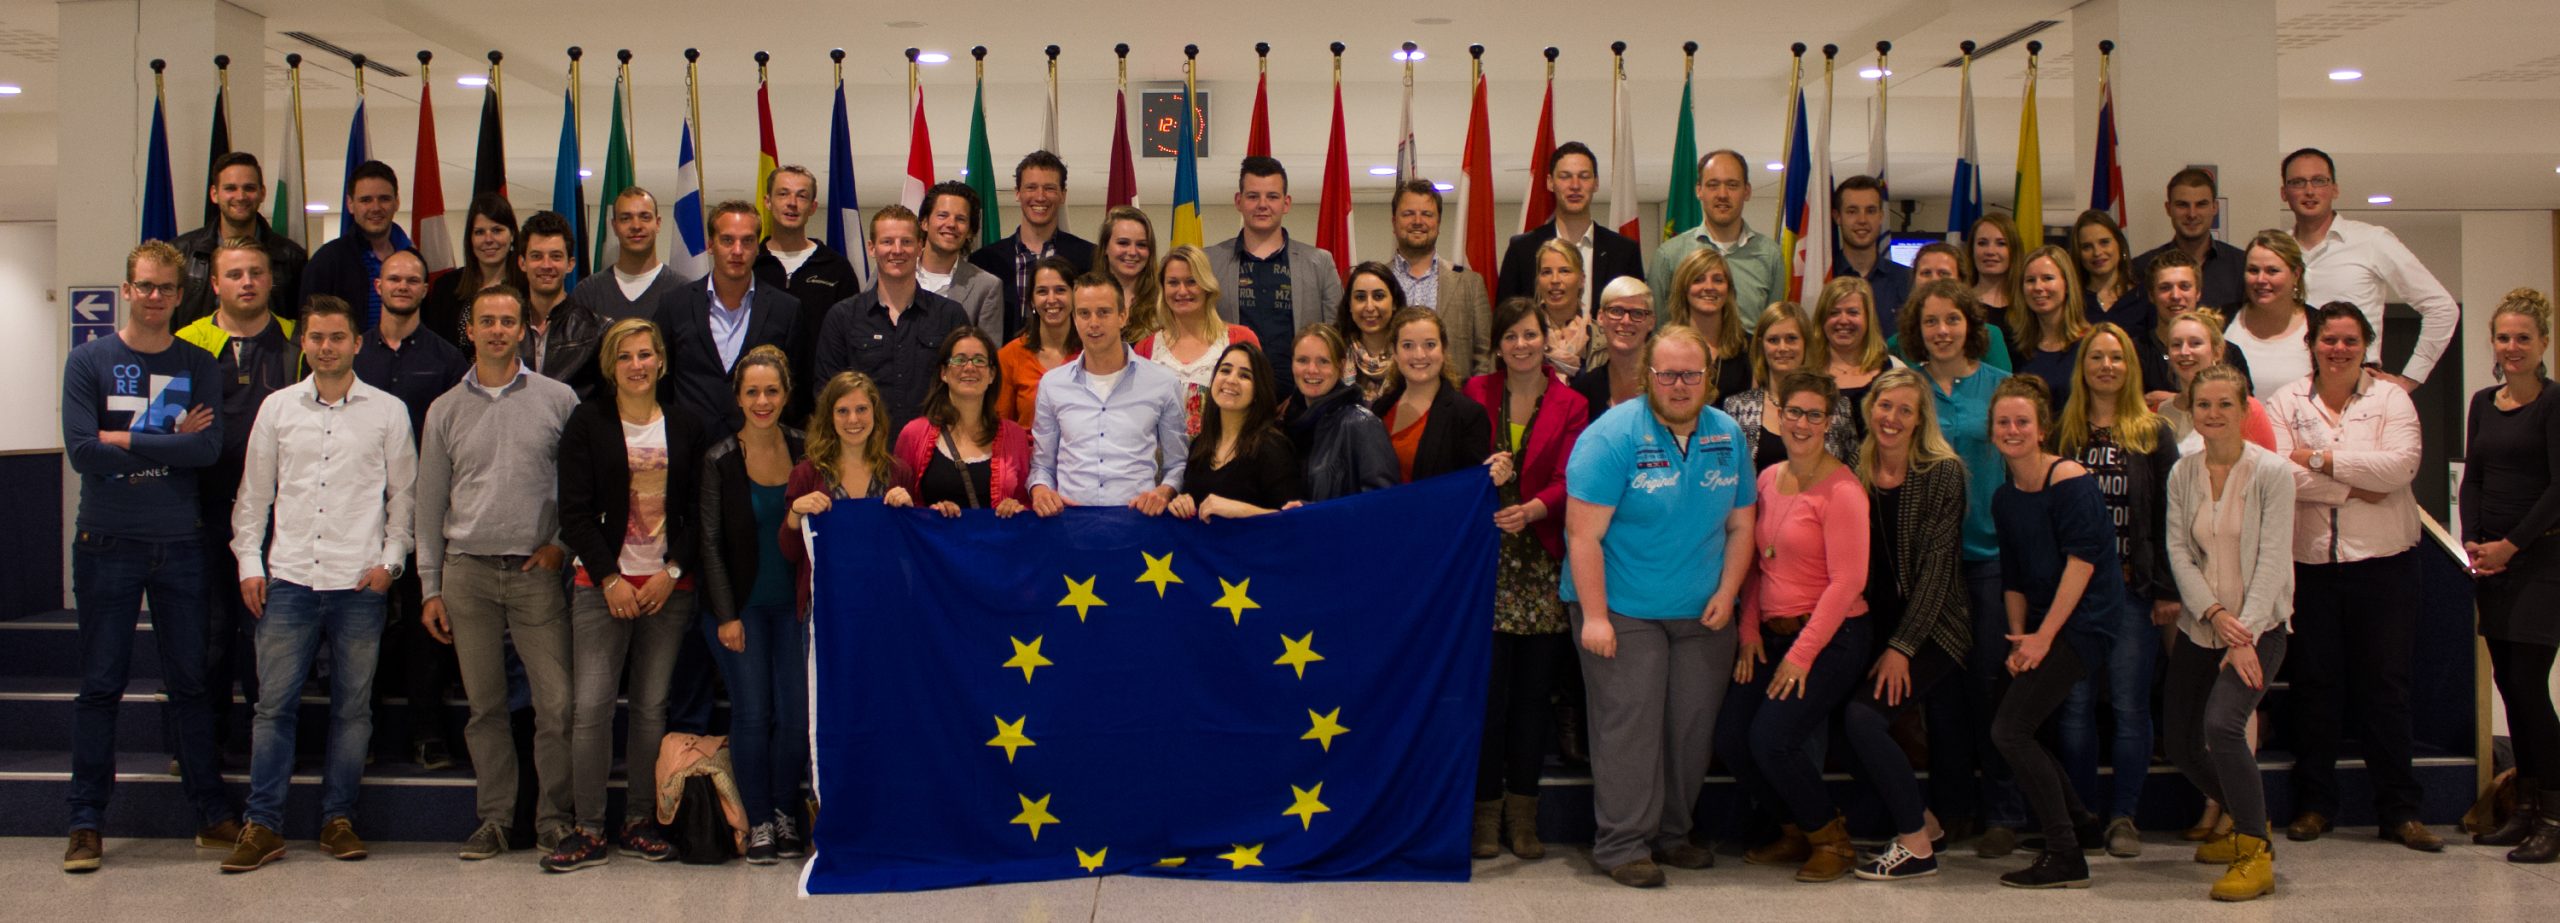 56 Achterhoekse jongeren in Europees Parlement tijdens tweedaags werkbezoek Brussel